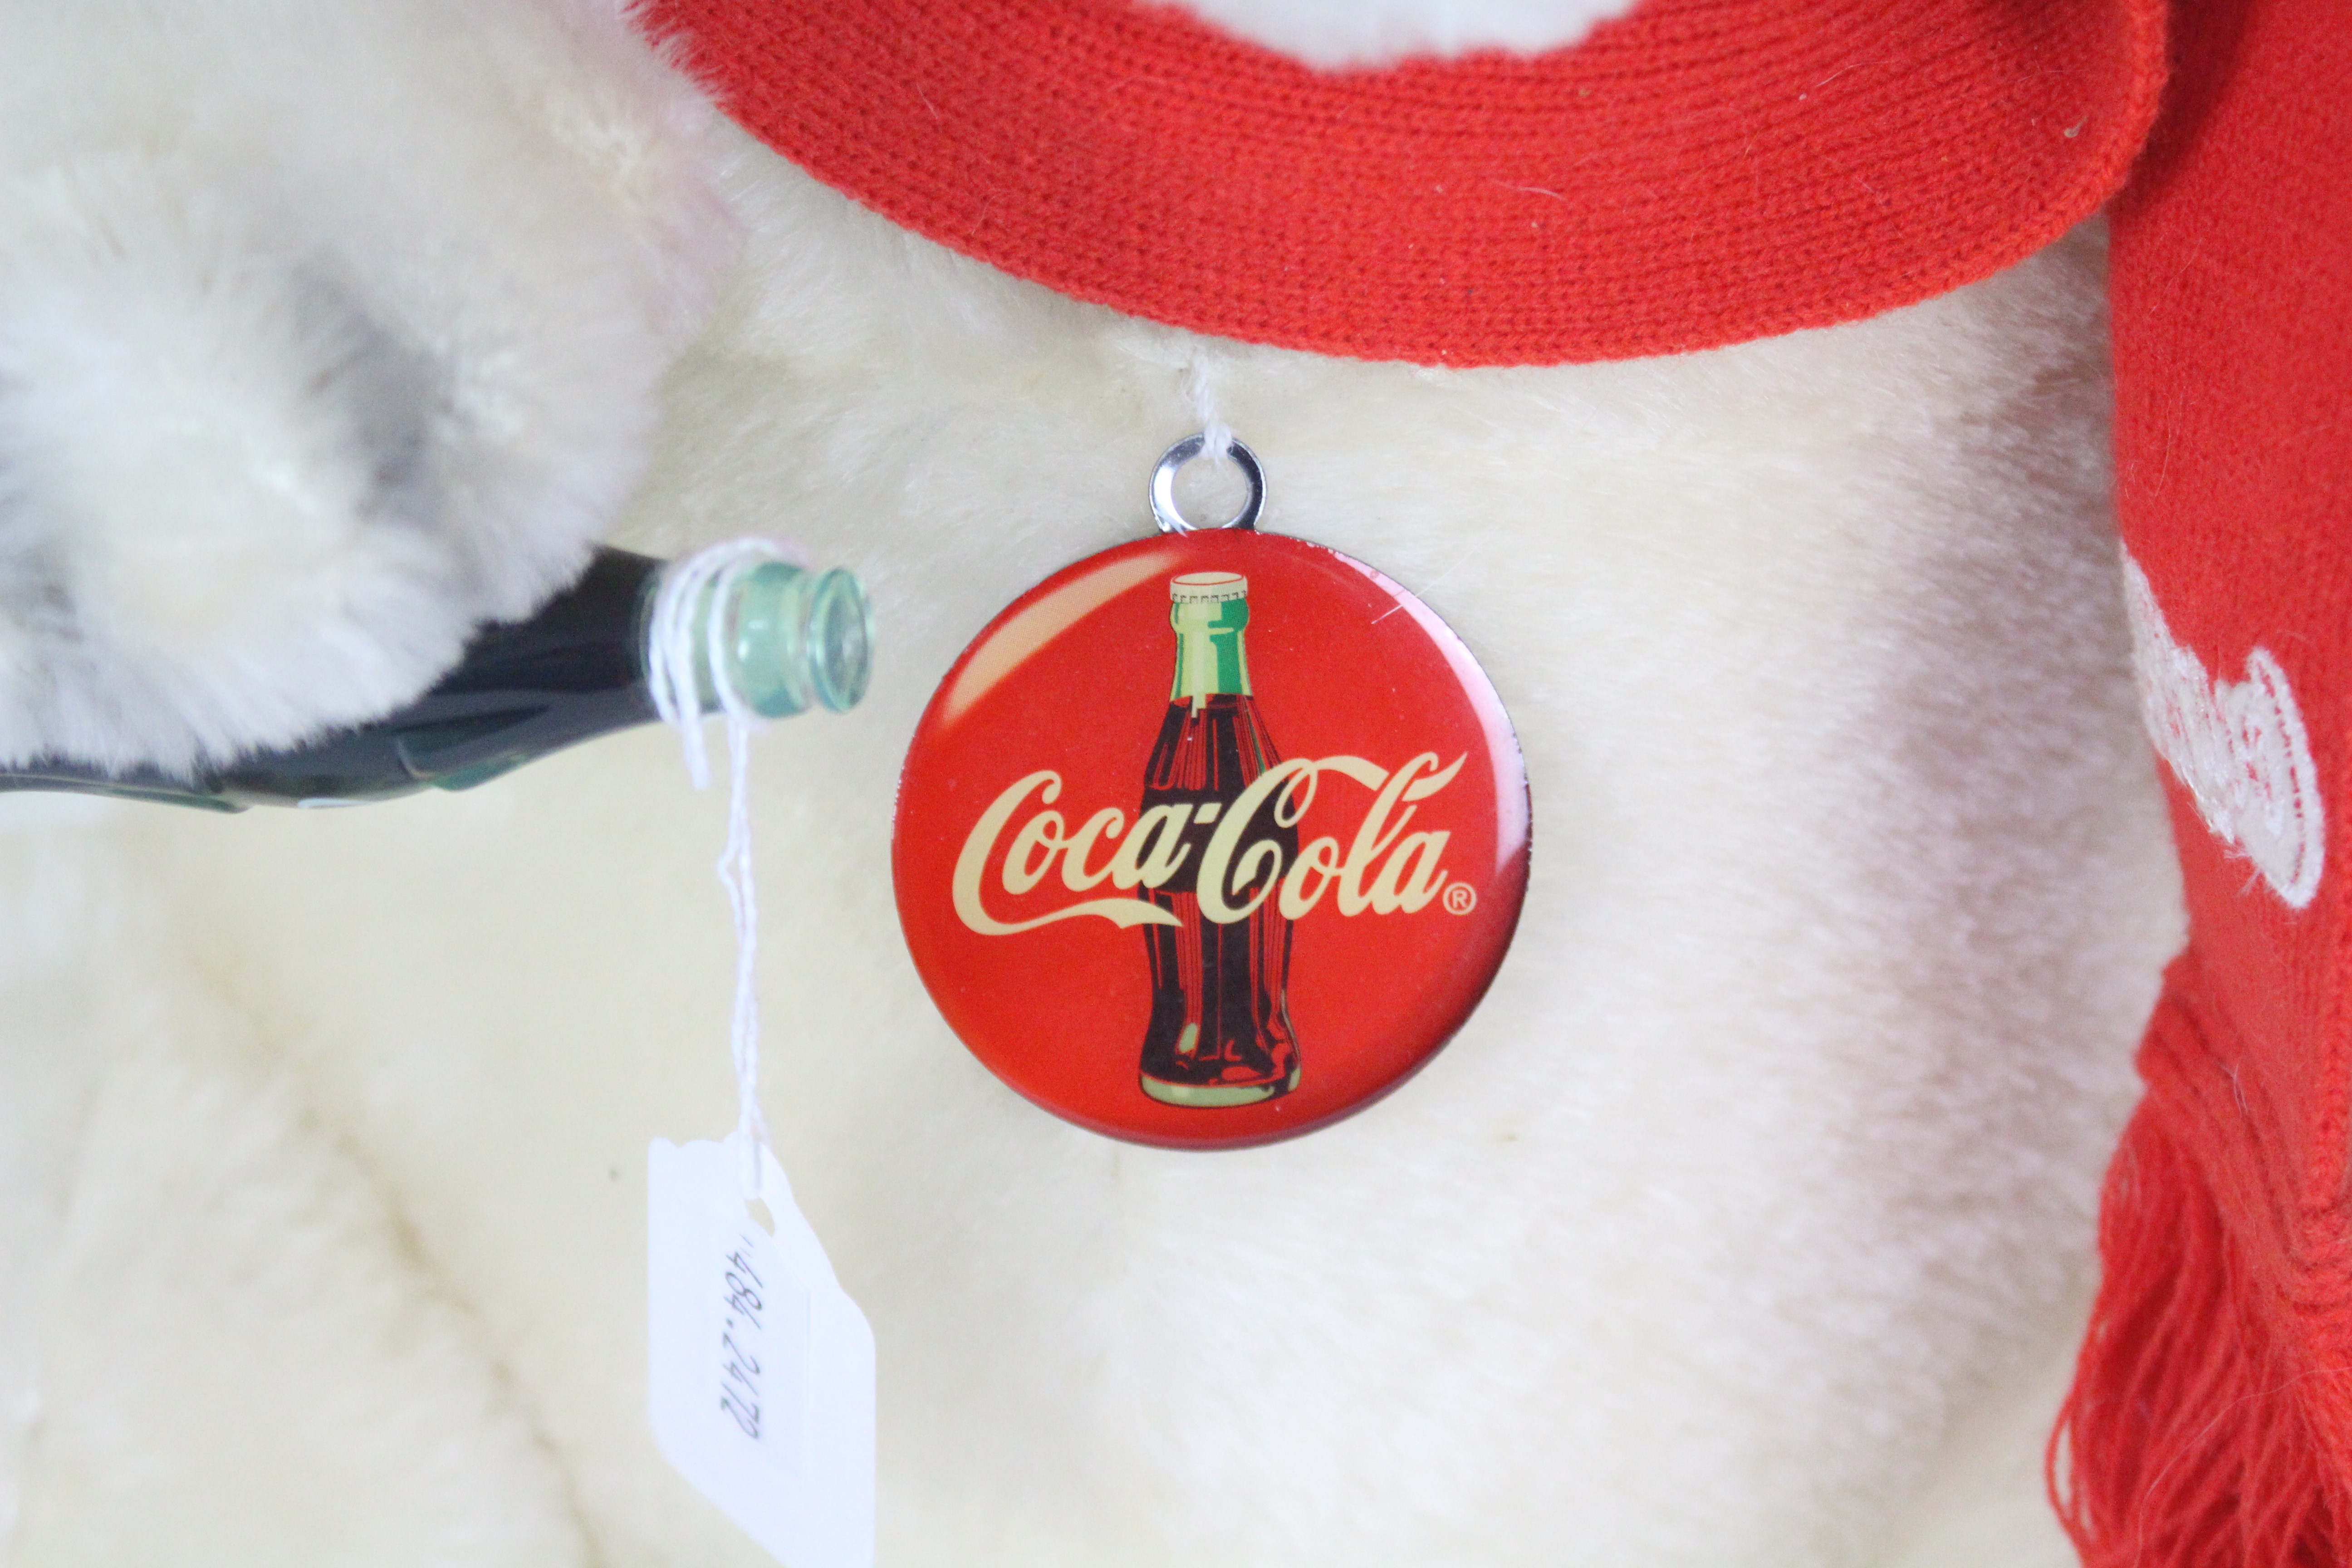 Steiff - An unboxed Steiff Limited Edition Coca Cola Polar Bear. - Image 4 of 8